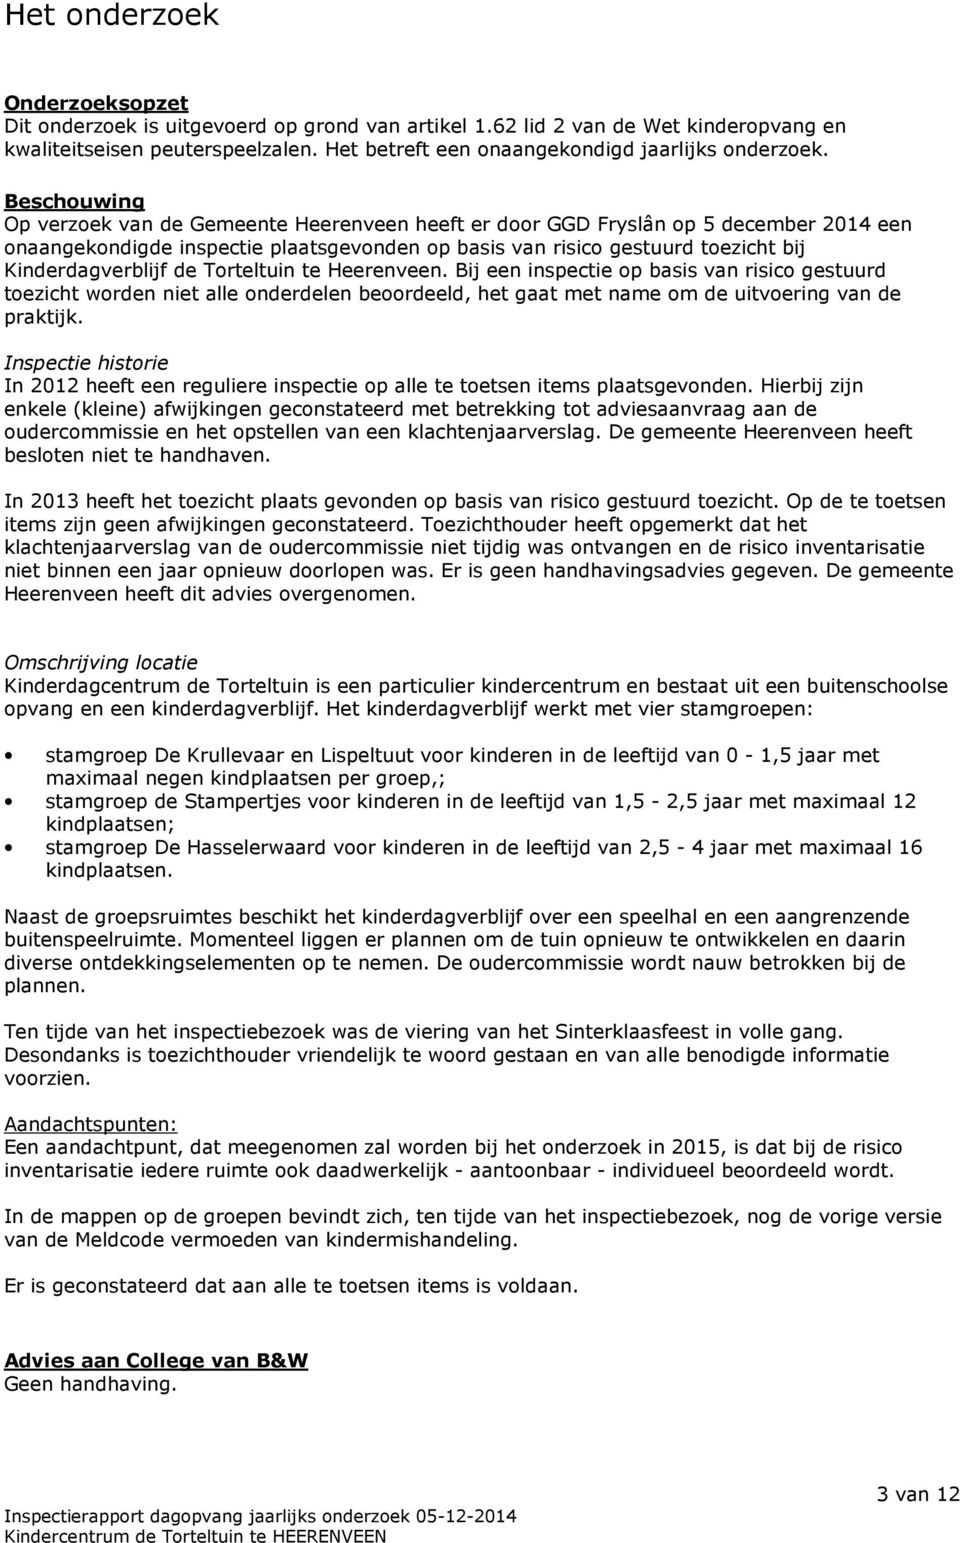 Beschouwing Op verzoek van de Gemeente Heerenveen heeft er door GGD Fryslân op 5 december 2014 een onaangekondigde inspectie plaatsgevonden op basis van risico gestuurd toezicht bij Kinderdagverblijf